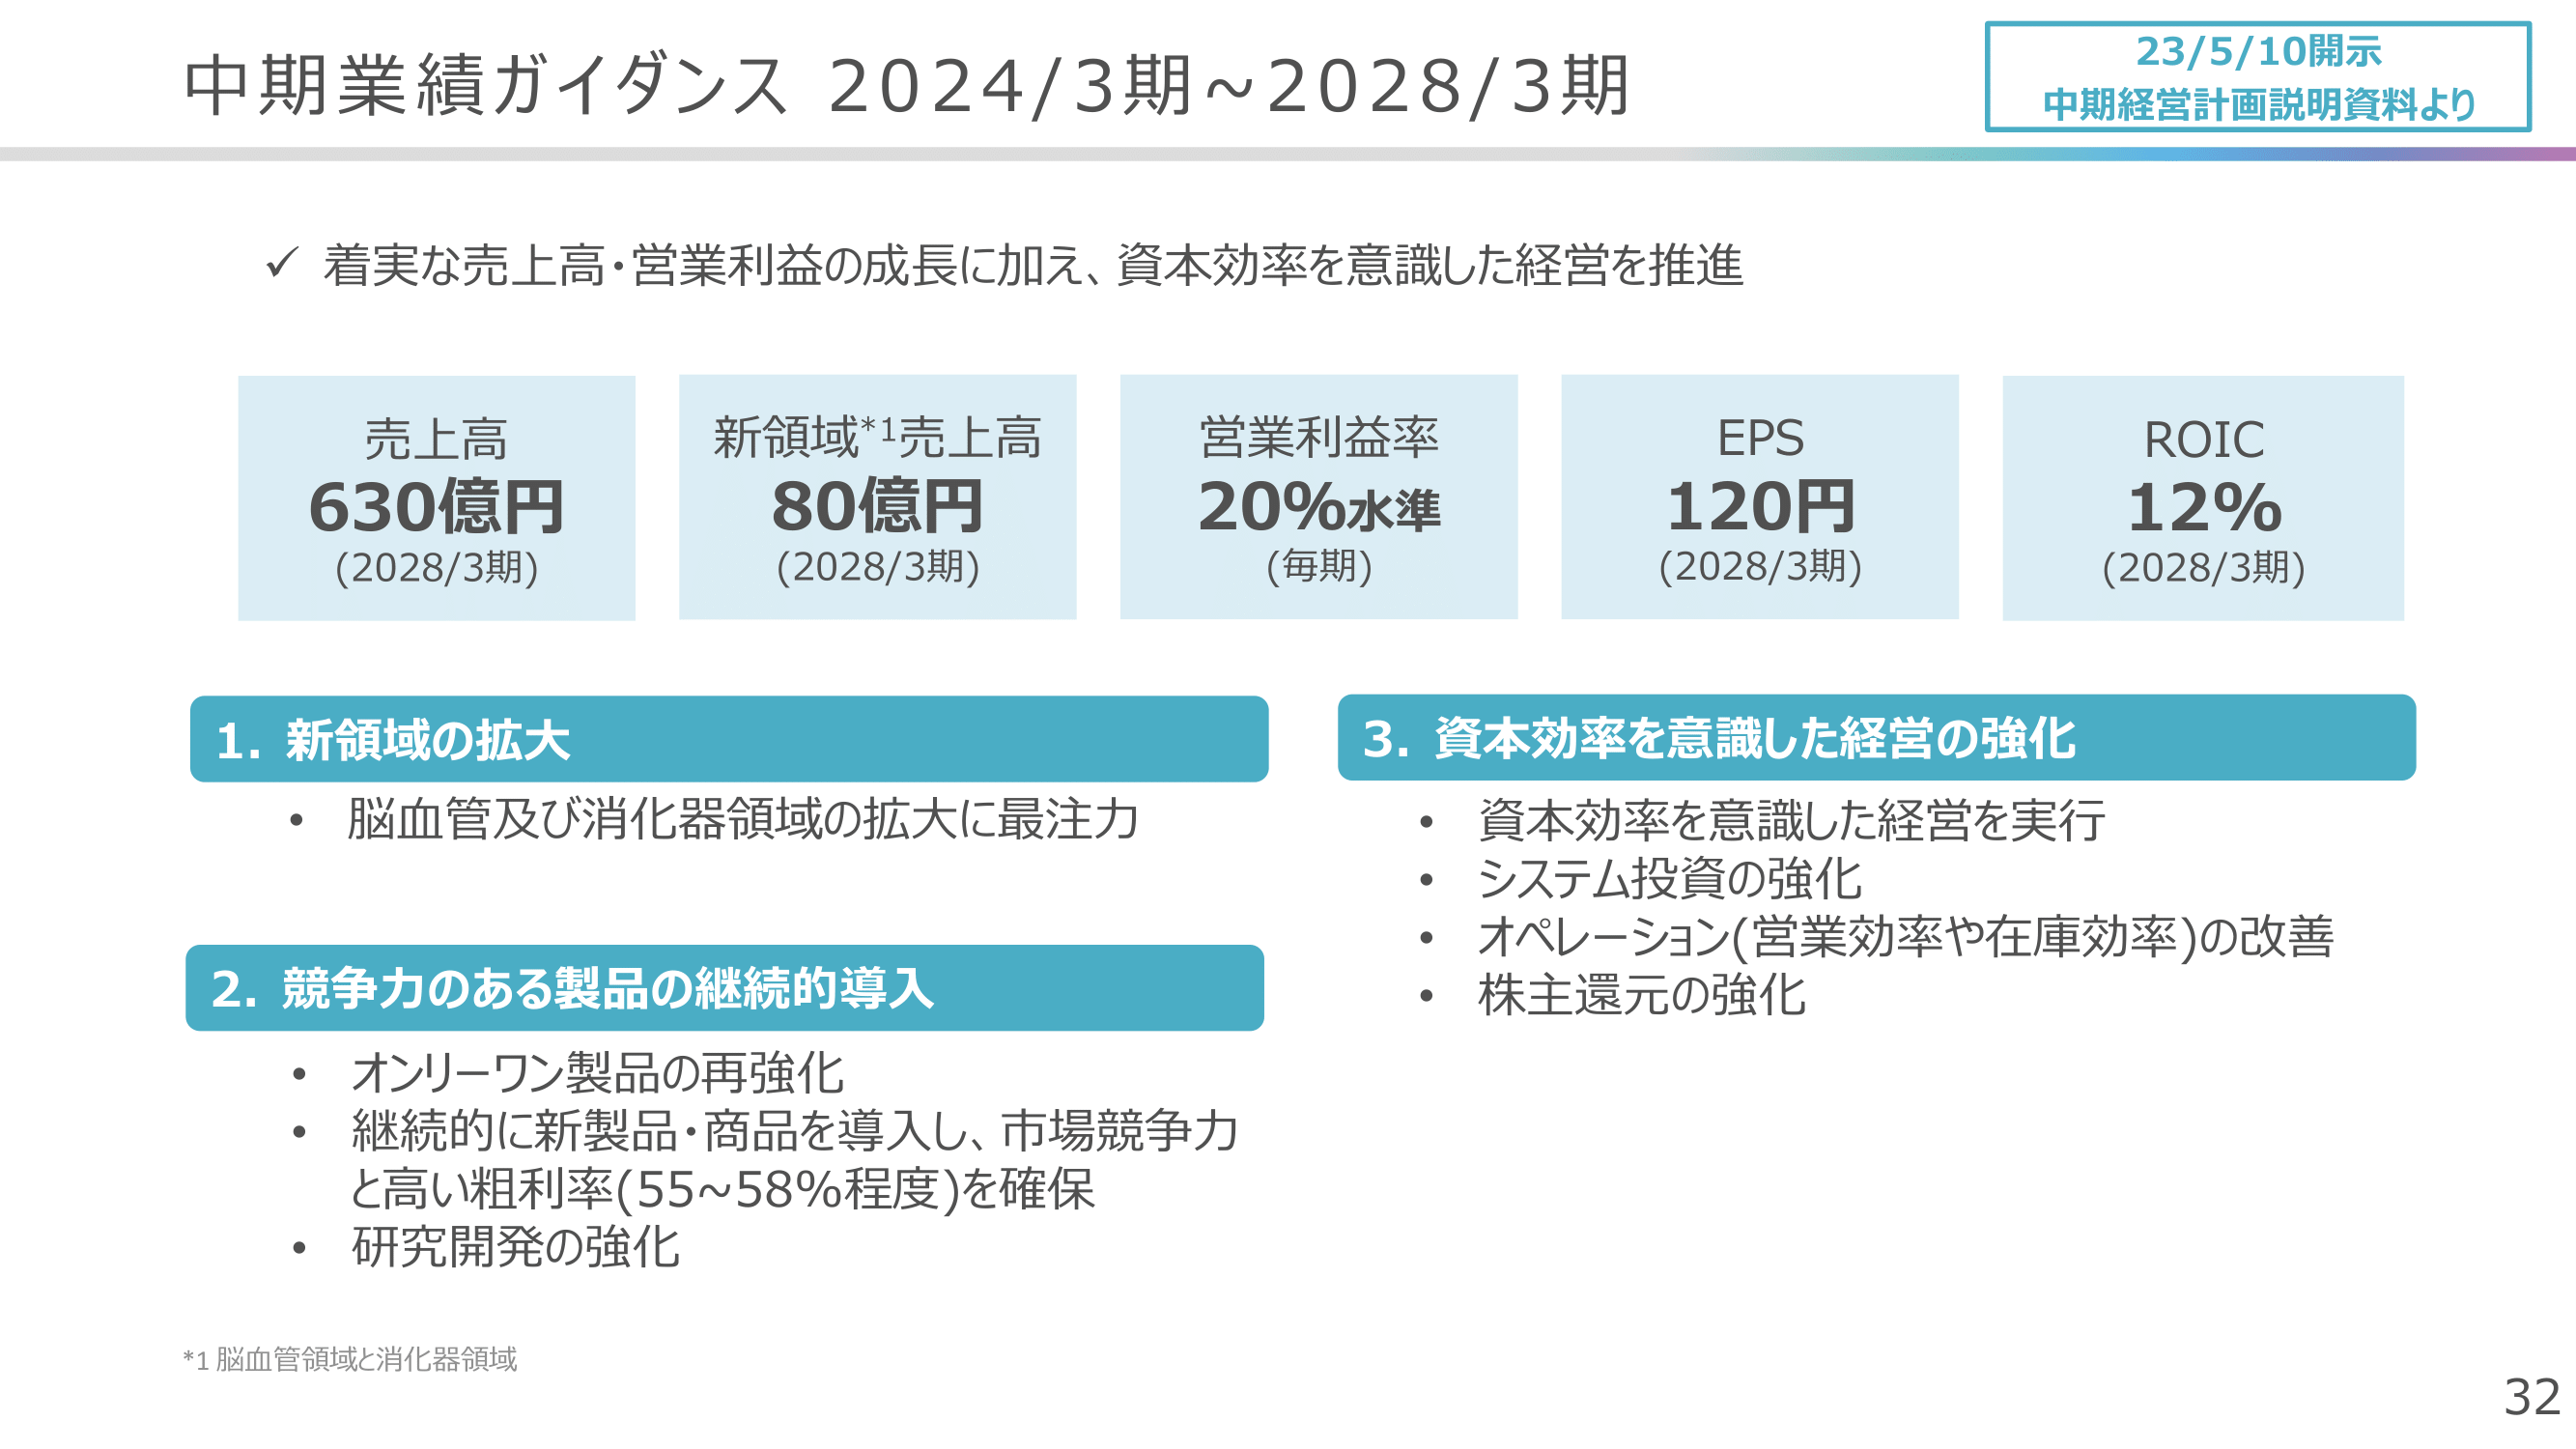 中期業績ガイダンス 2024/3期〜2028/3期